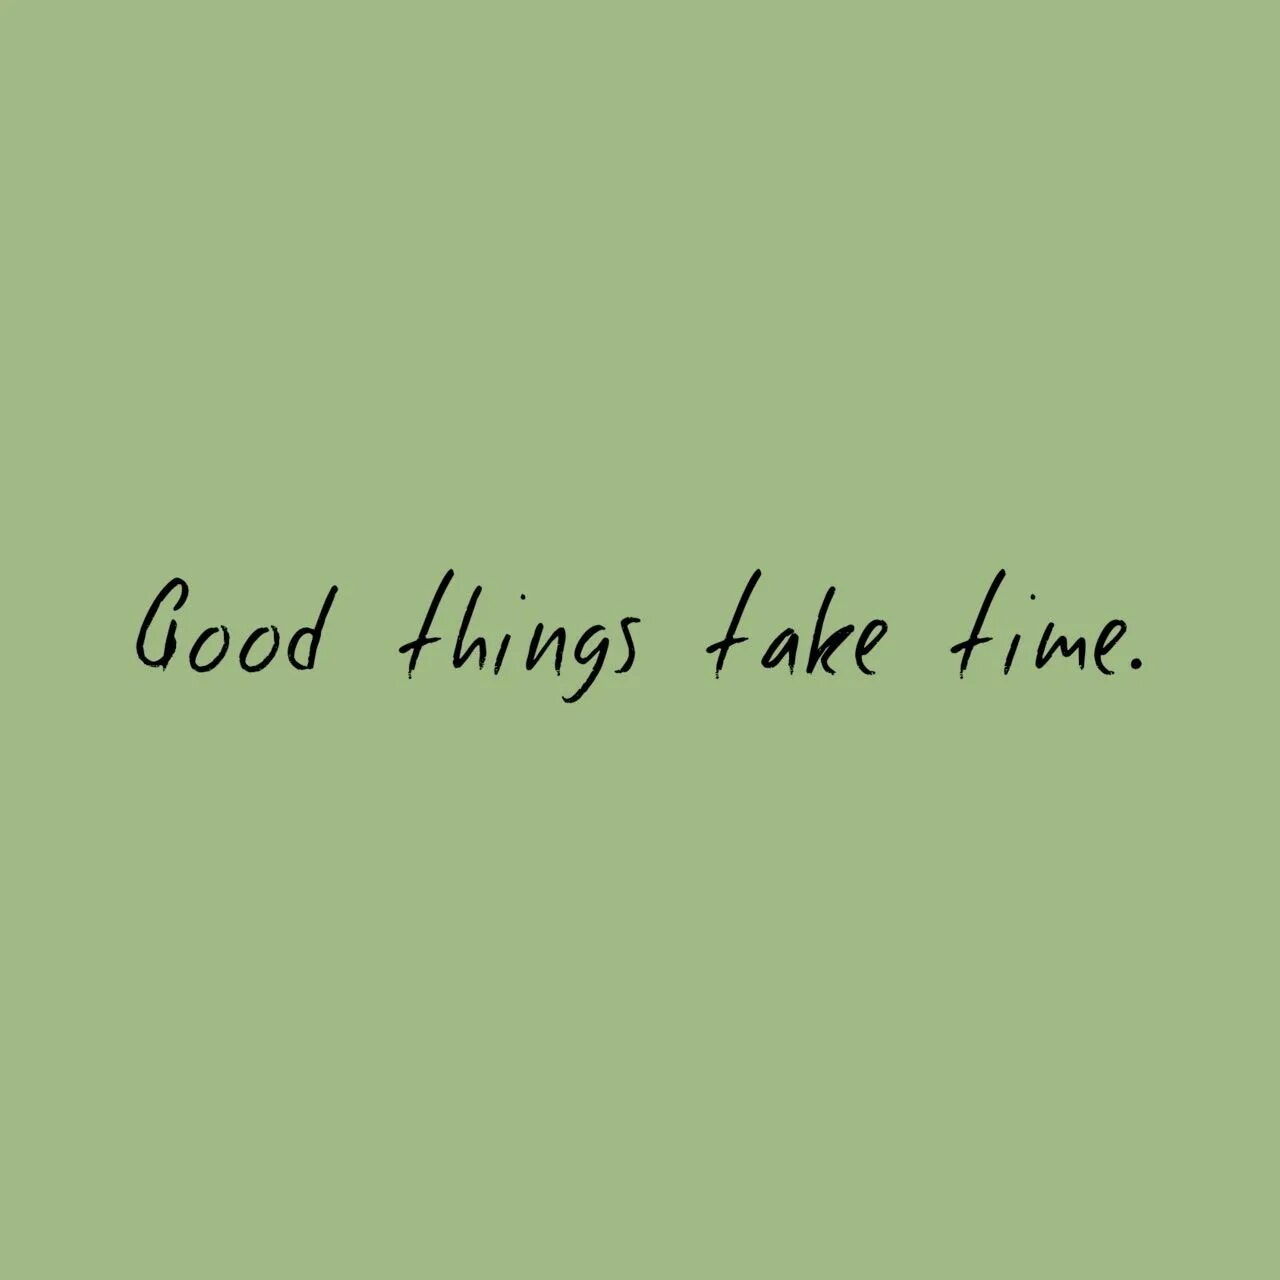 Take good. Good things take time. Картинка good things take time. Good thing. Good things take time Wallpaper.